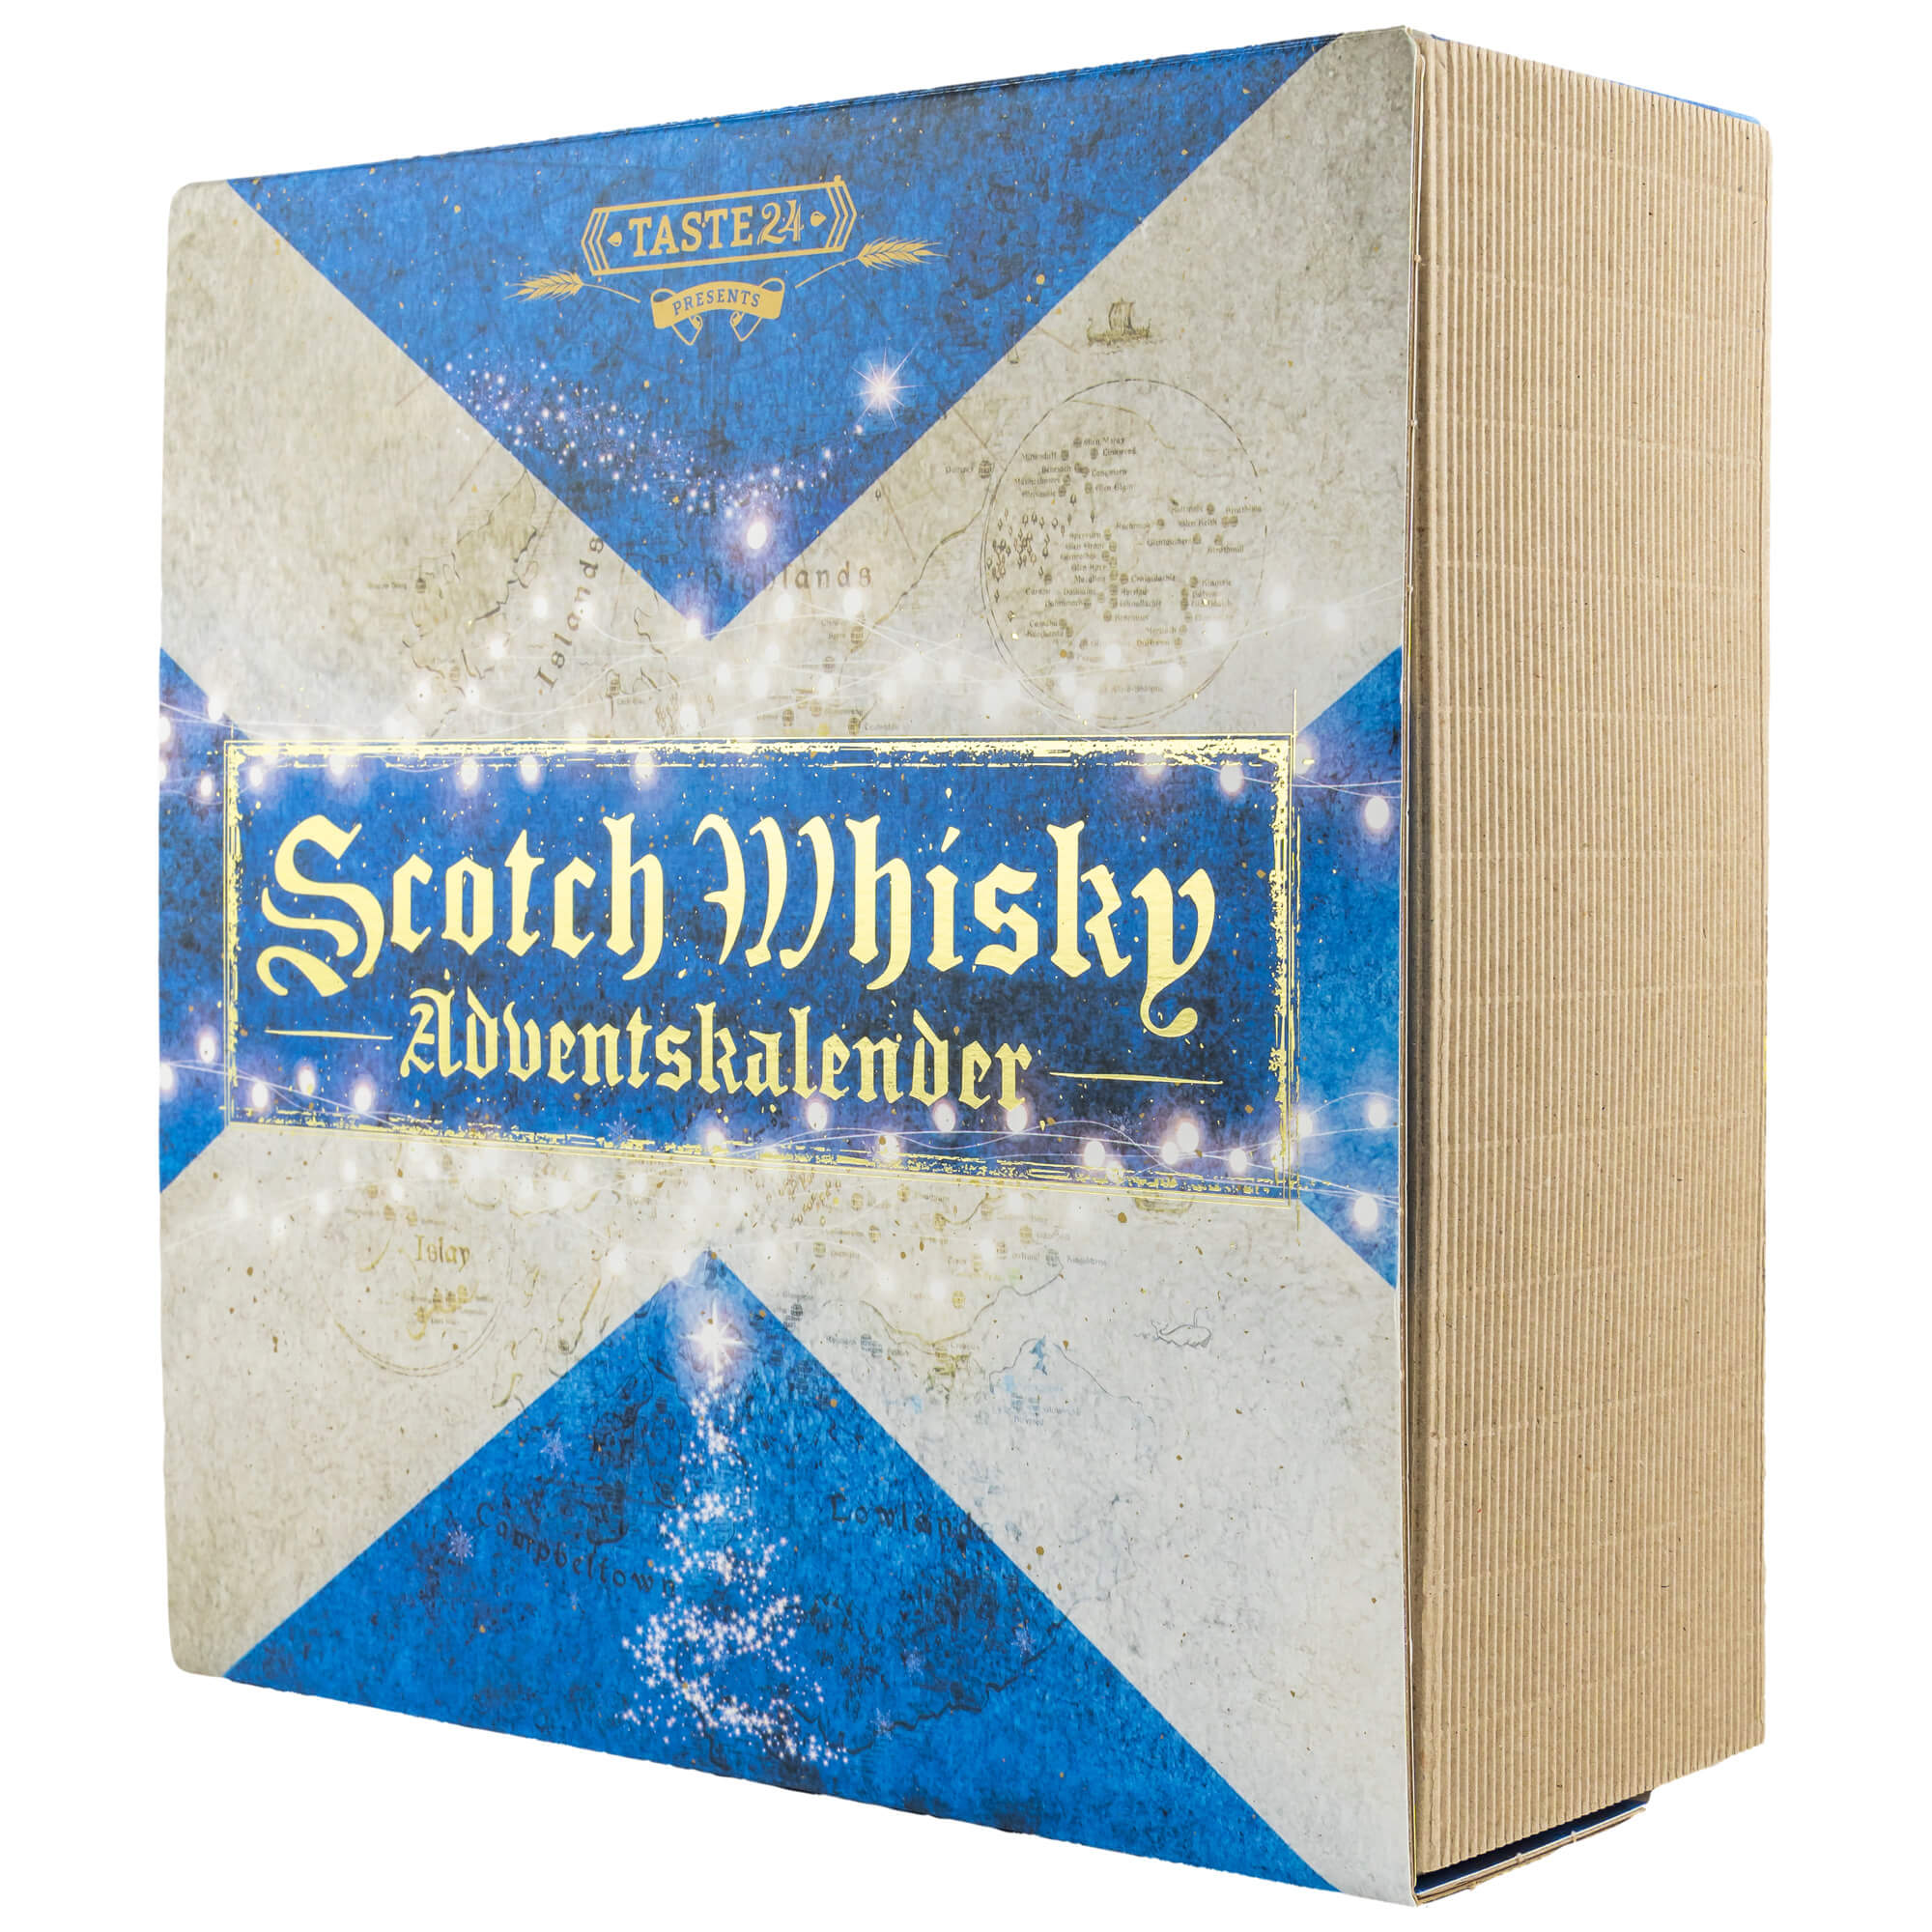 Scotch-Whisky-Adventskalender (by Kirsch)